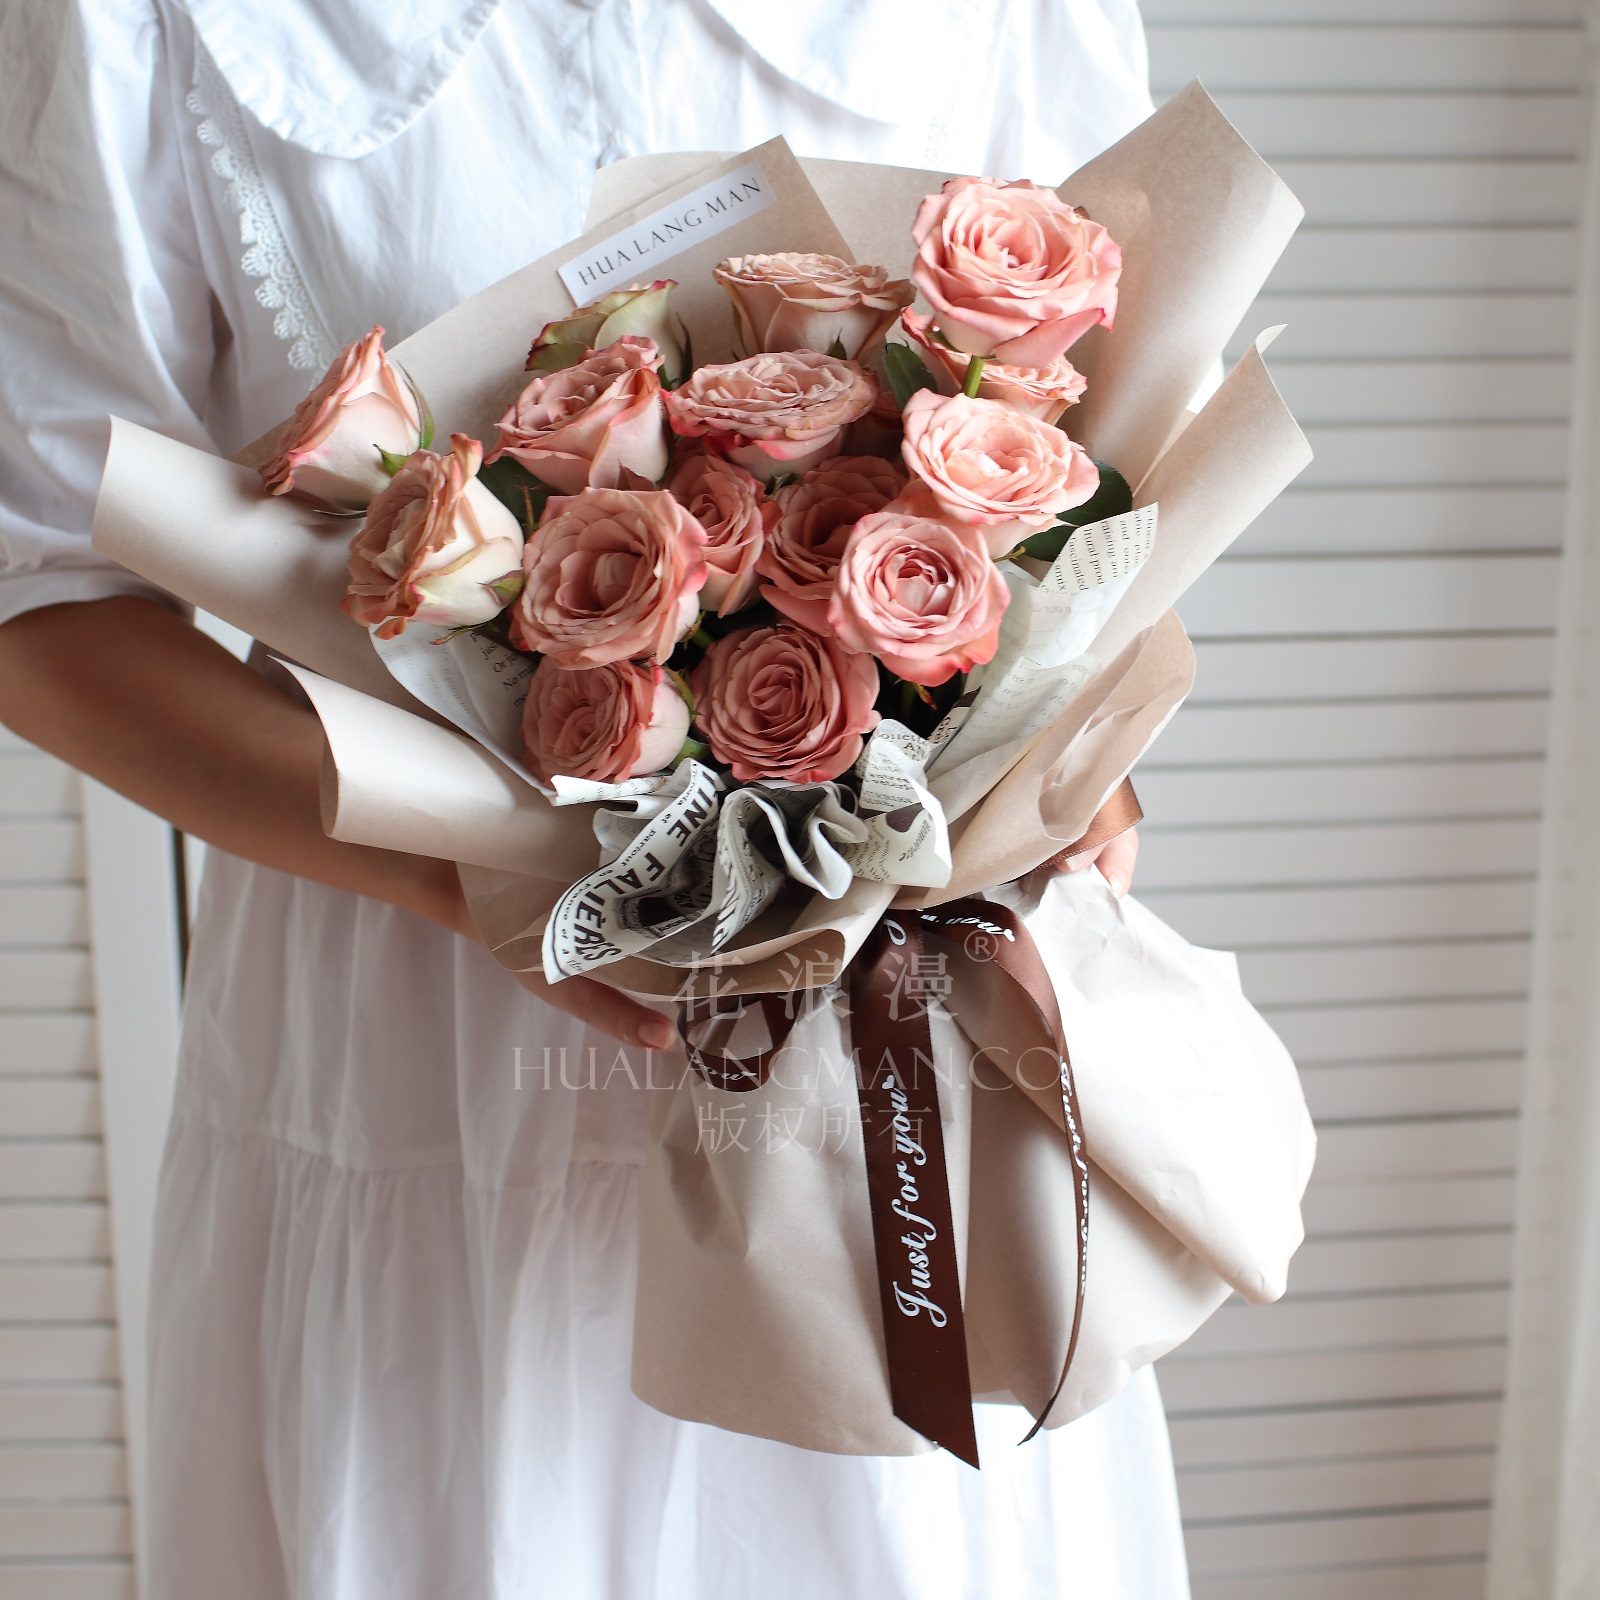 3:为女友或爱人送出浪漫的花